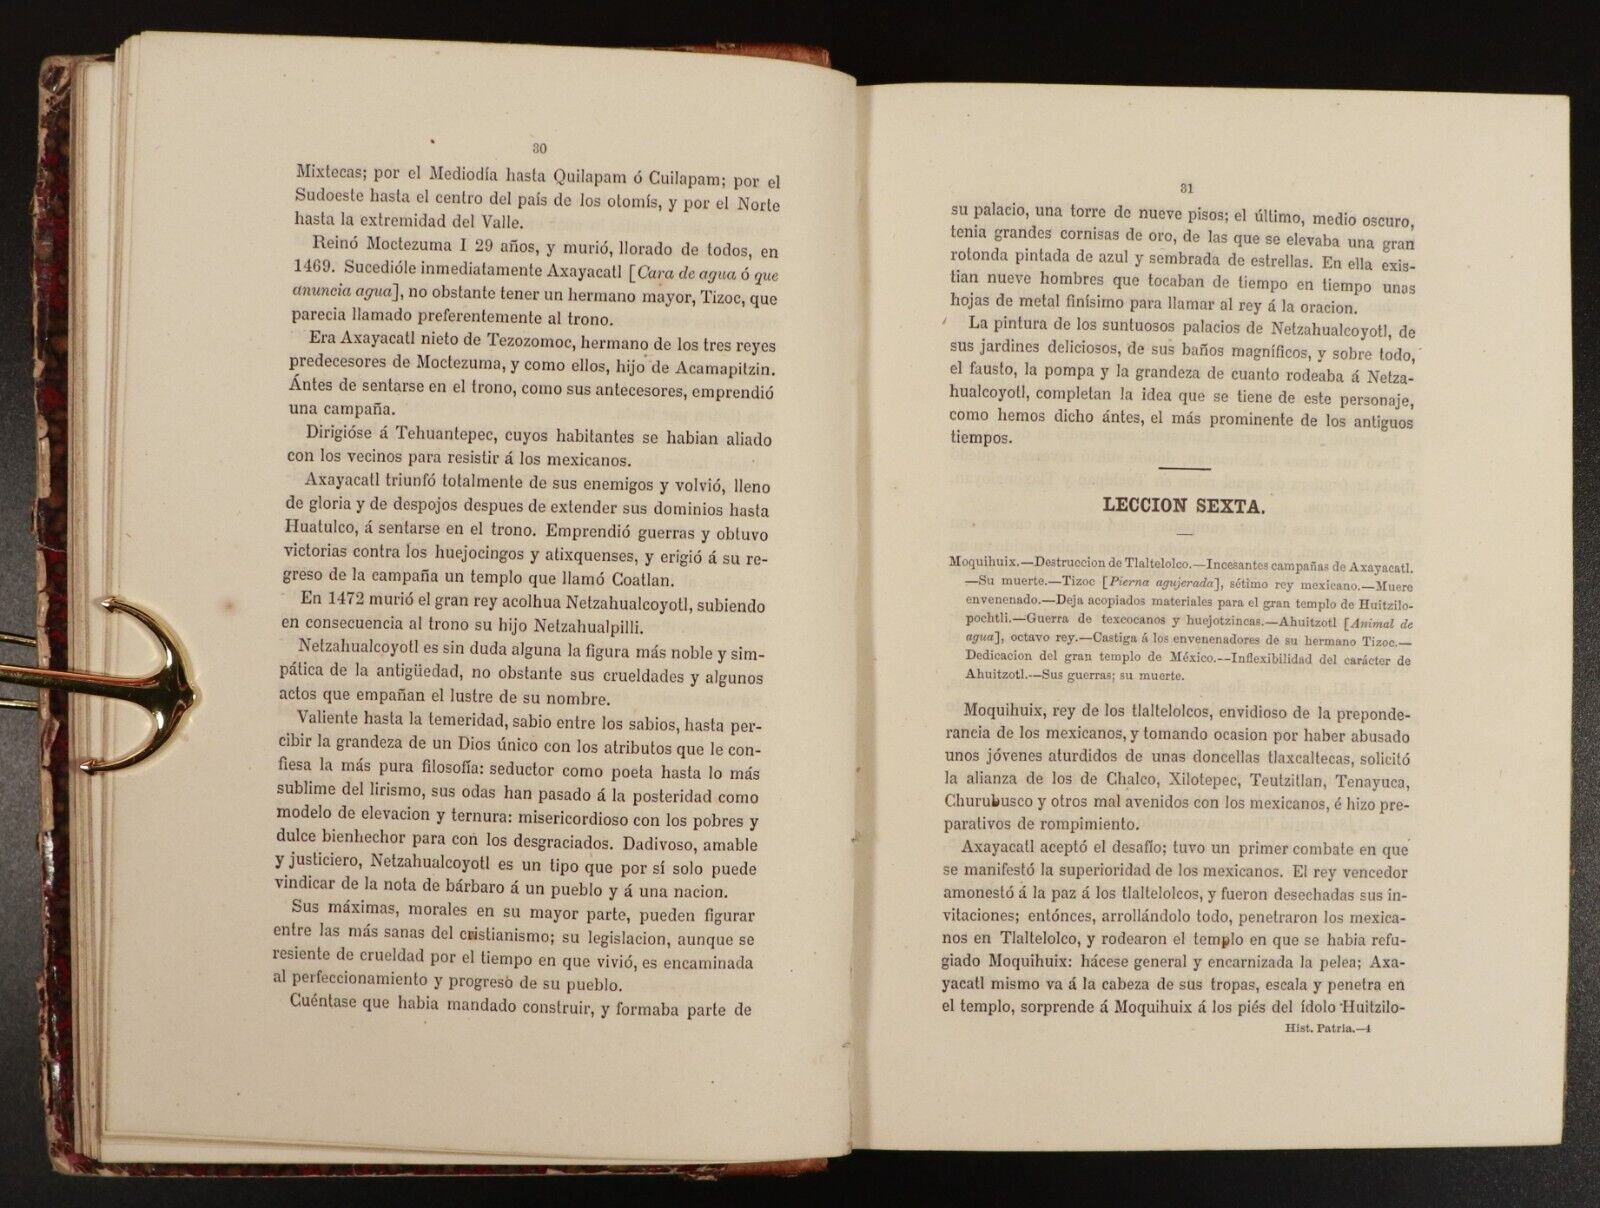 1891 Lecciones de Historia Patria by Guillermo Prieto Antiquarian History Book